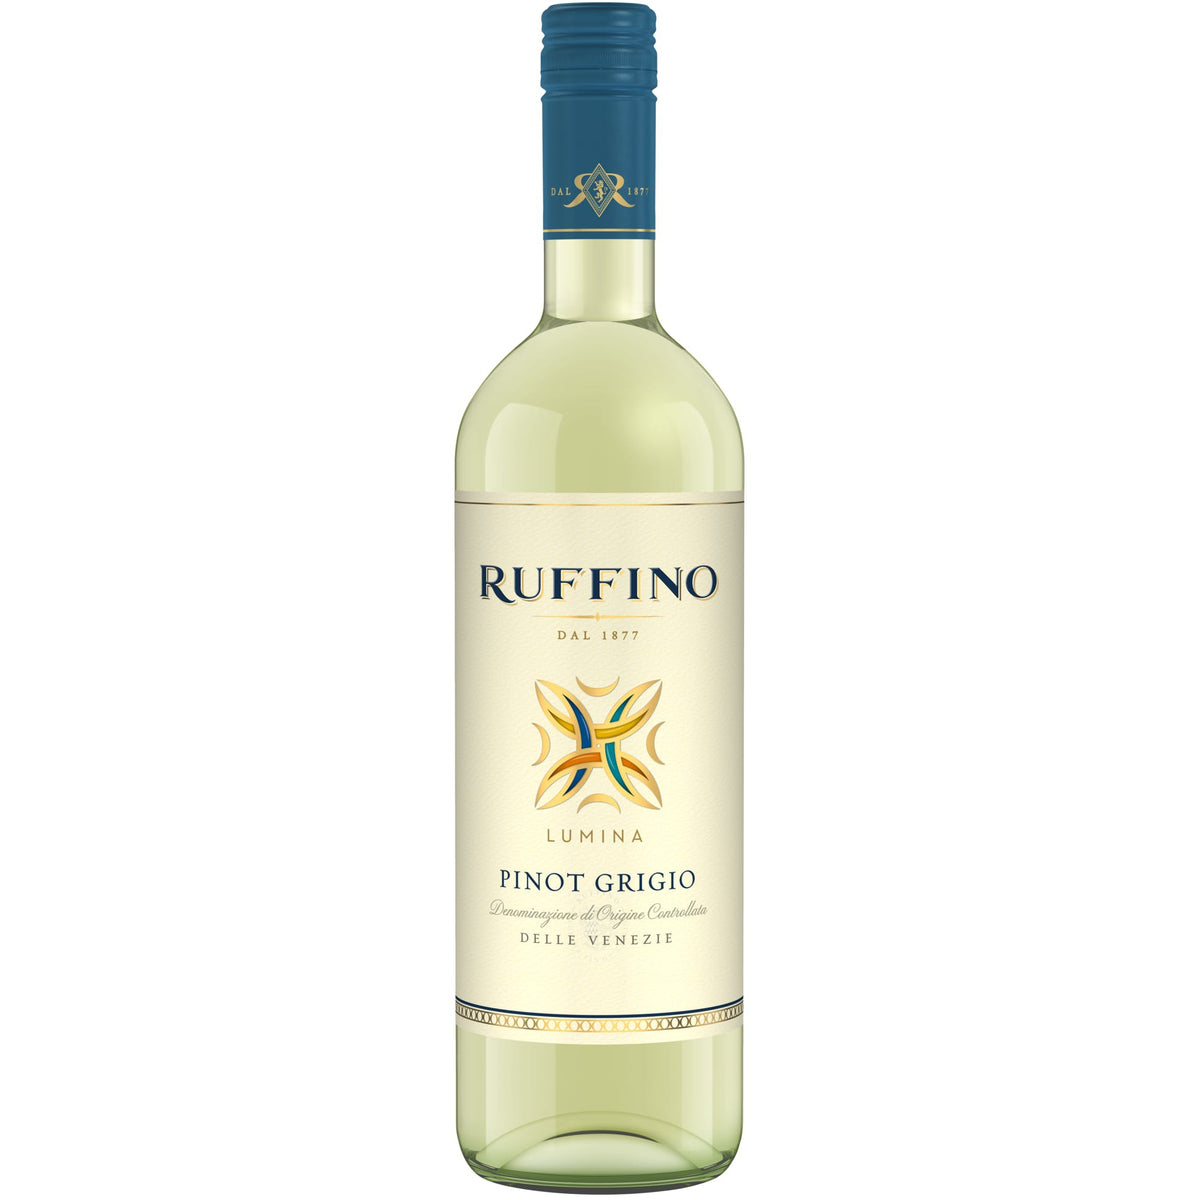 Ruffino Pinot Grigio 2019